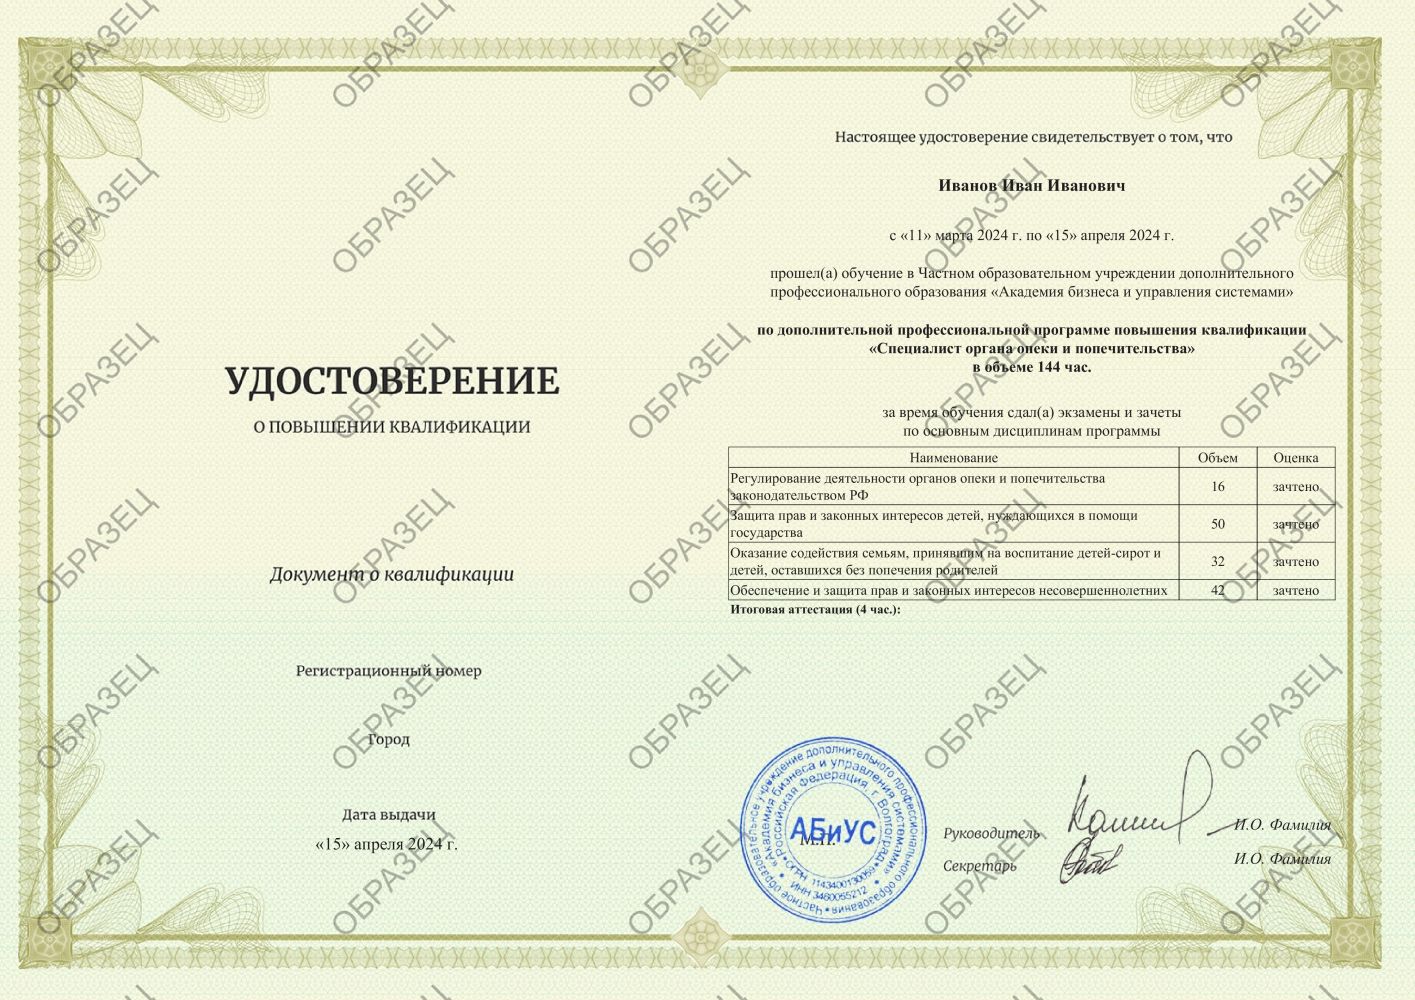 Удостоверение Специалист органа опеки и попечительства 144 часа 5250 руб.